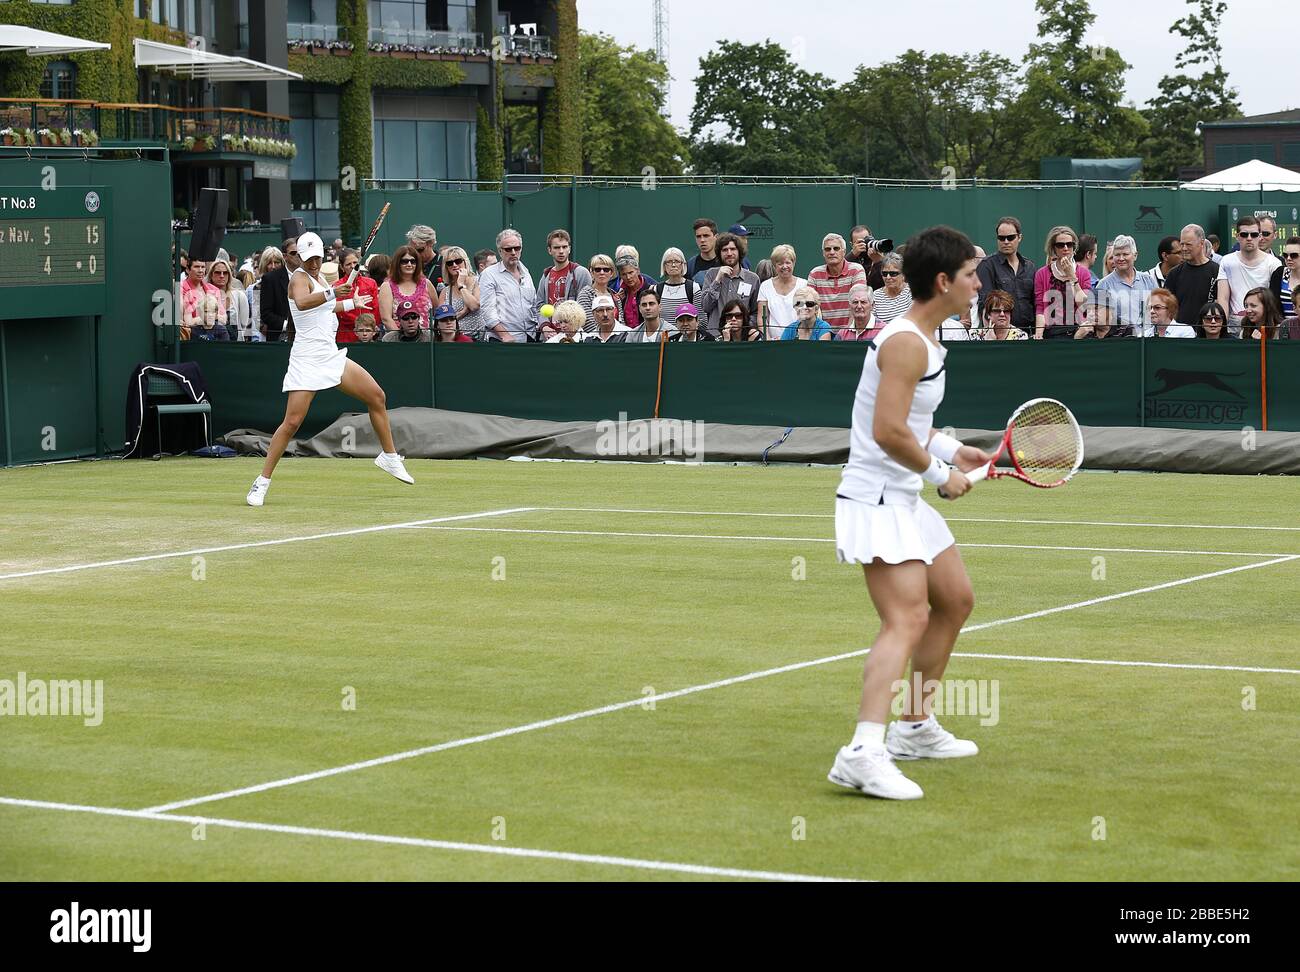 Spaniens Silvia Soler-Espinosa (links) und Carla Suarez Navarro (rechts) im Einsatz gegen die Großbritanniens Melanie South und Tara Moore am vierten Tag der Wimbledon Meisterschaften im All England Lawn Tennis and Croquet Club, Wimbledon. Stockfoto